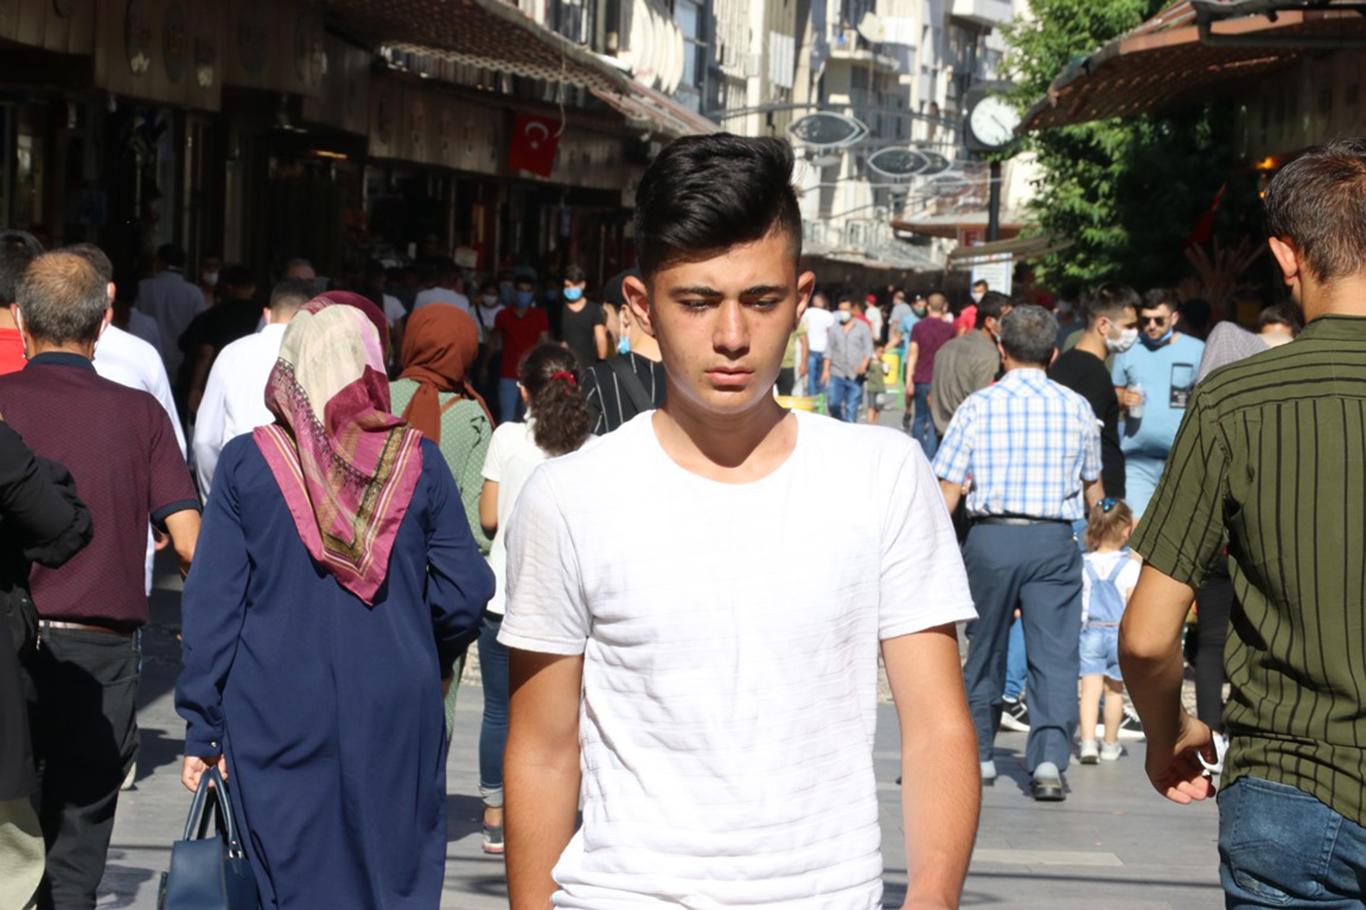 Gaziantep'te 2 bin 765 kişiye Covid-19 tedbirlerine uymama cezası verildi